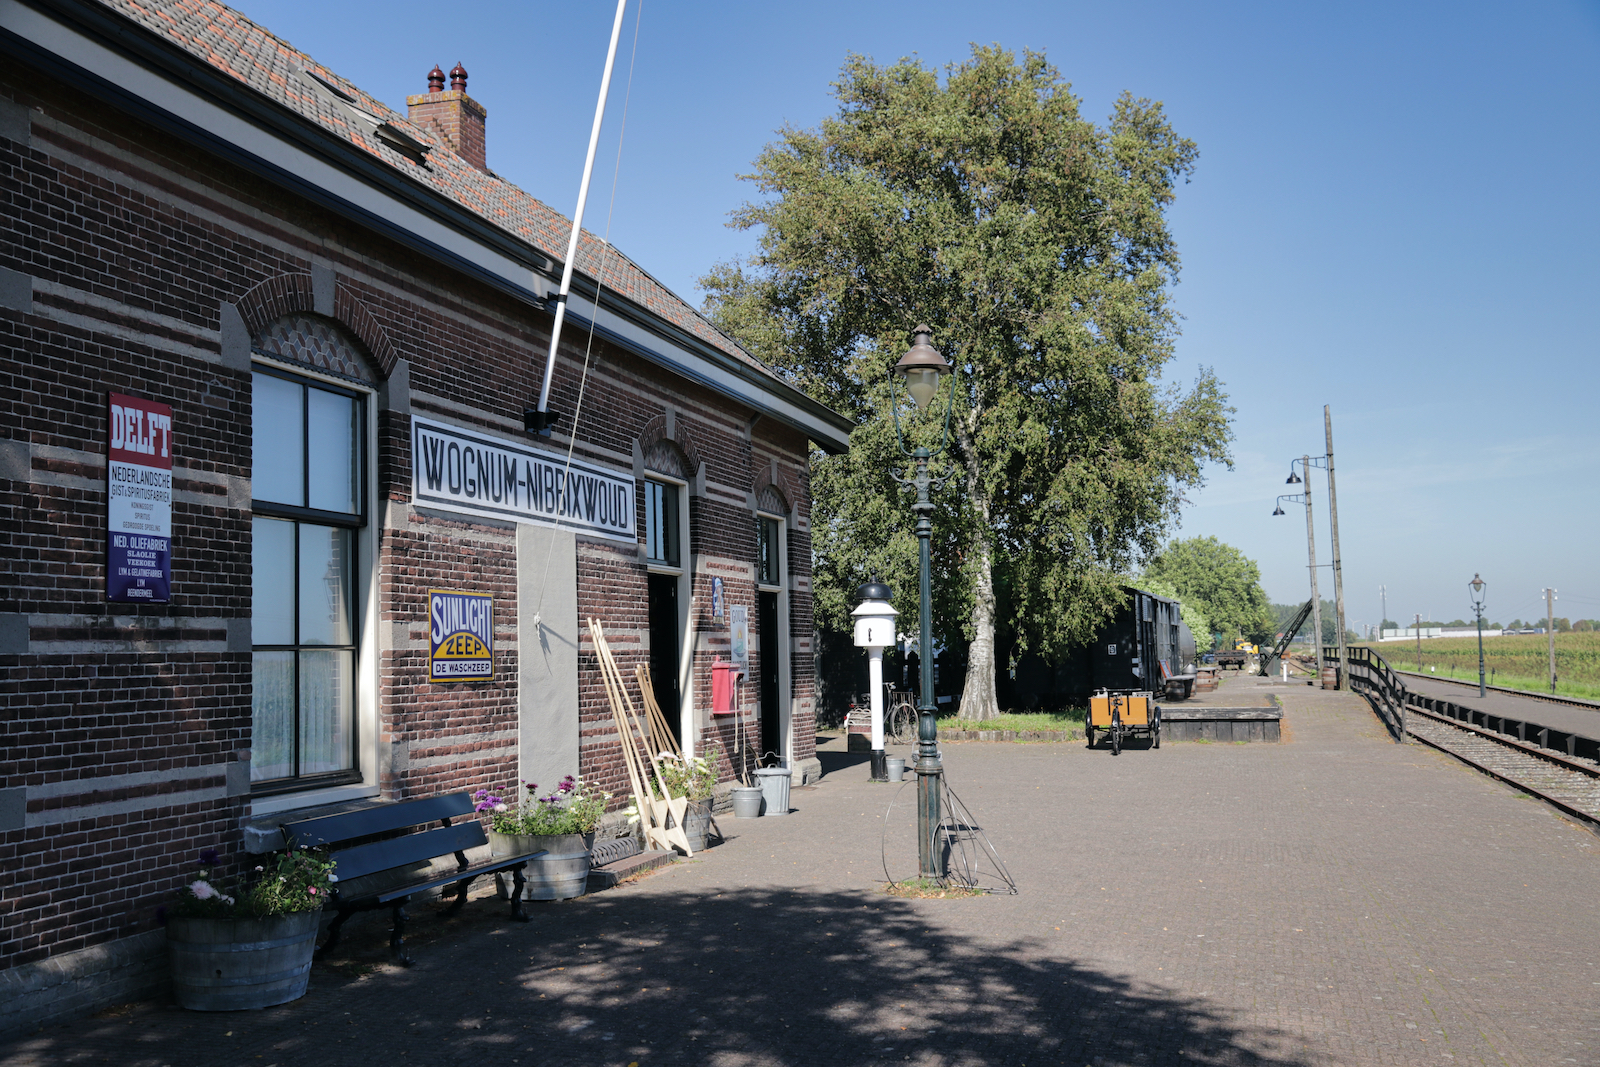 Station Museumspoorlijn Wognum-Nibbixwoud